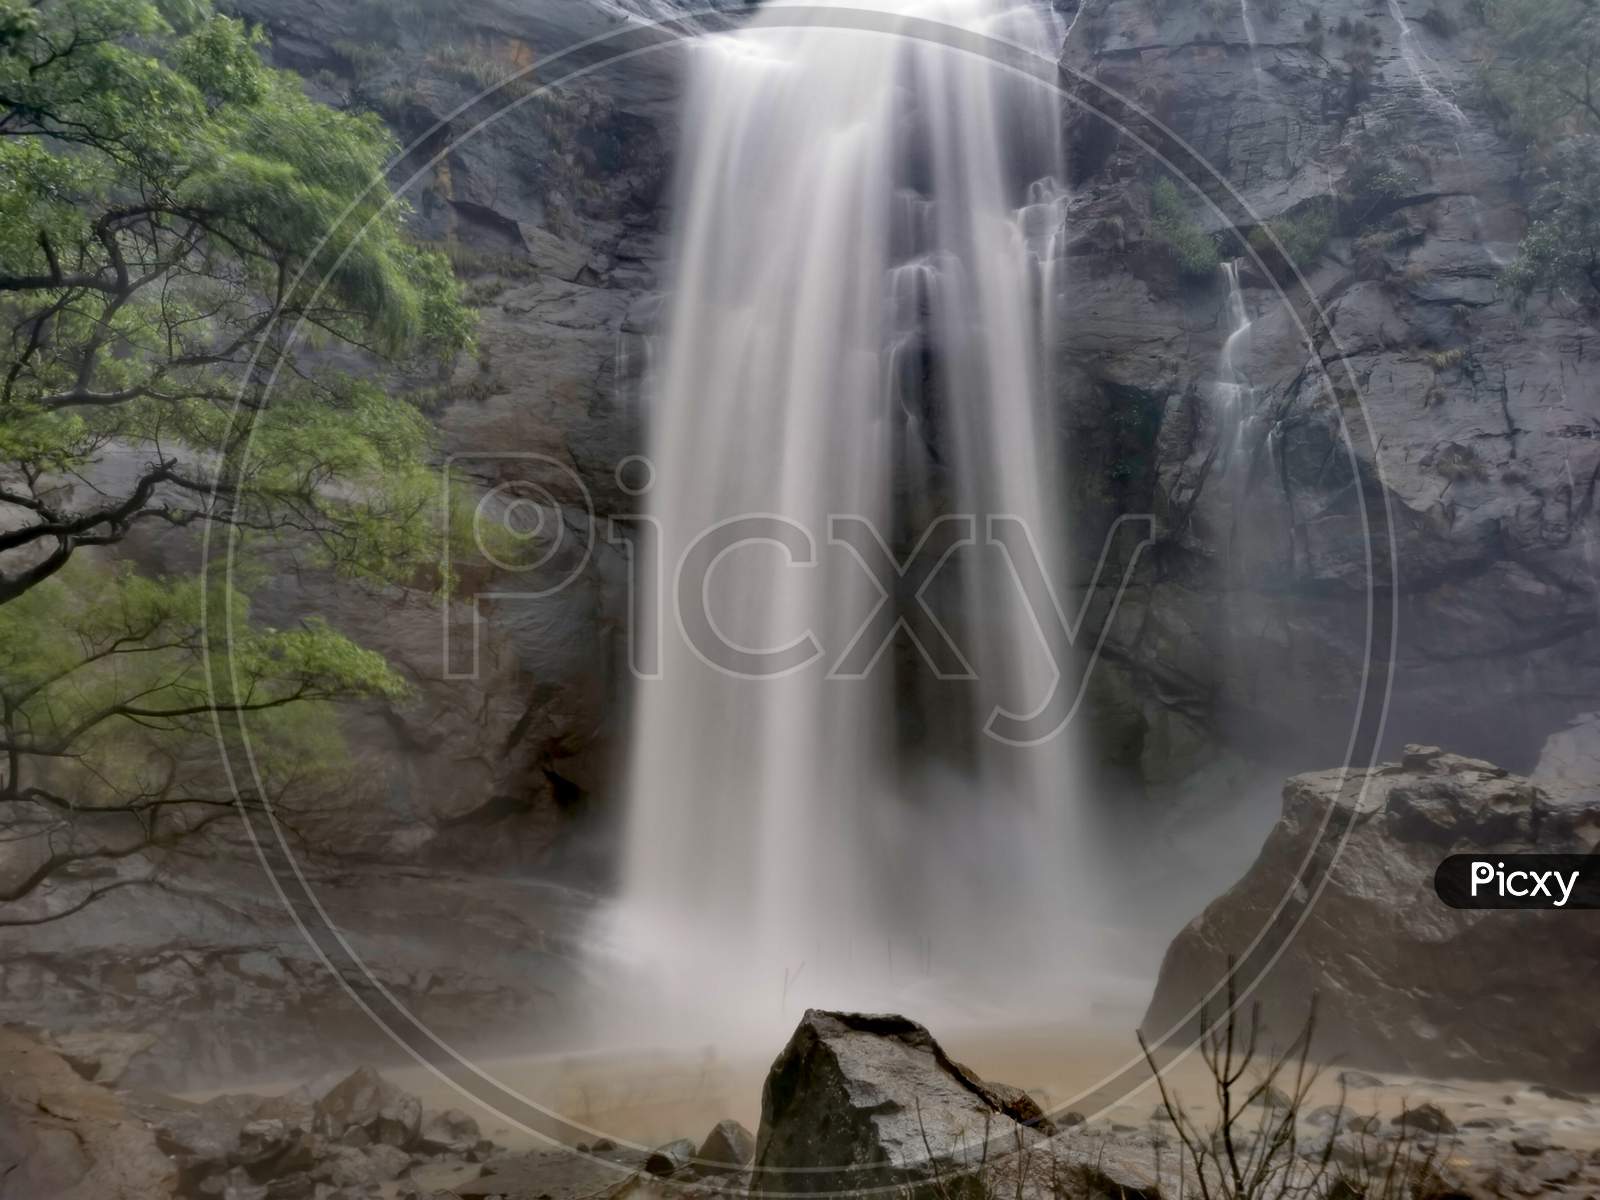 Agaya Gangai waterfalls, Kolli hills, Tamilnadu.